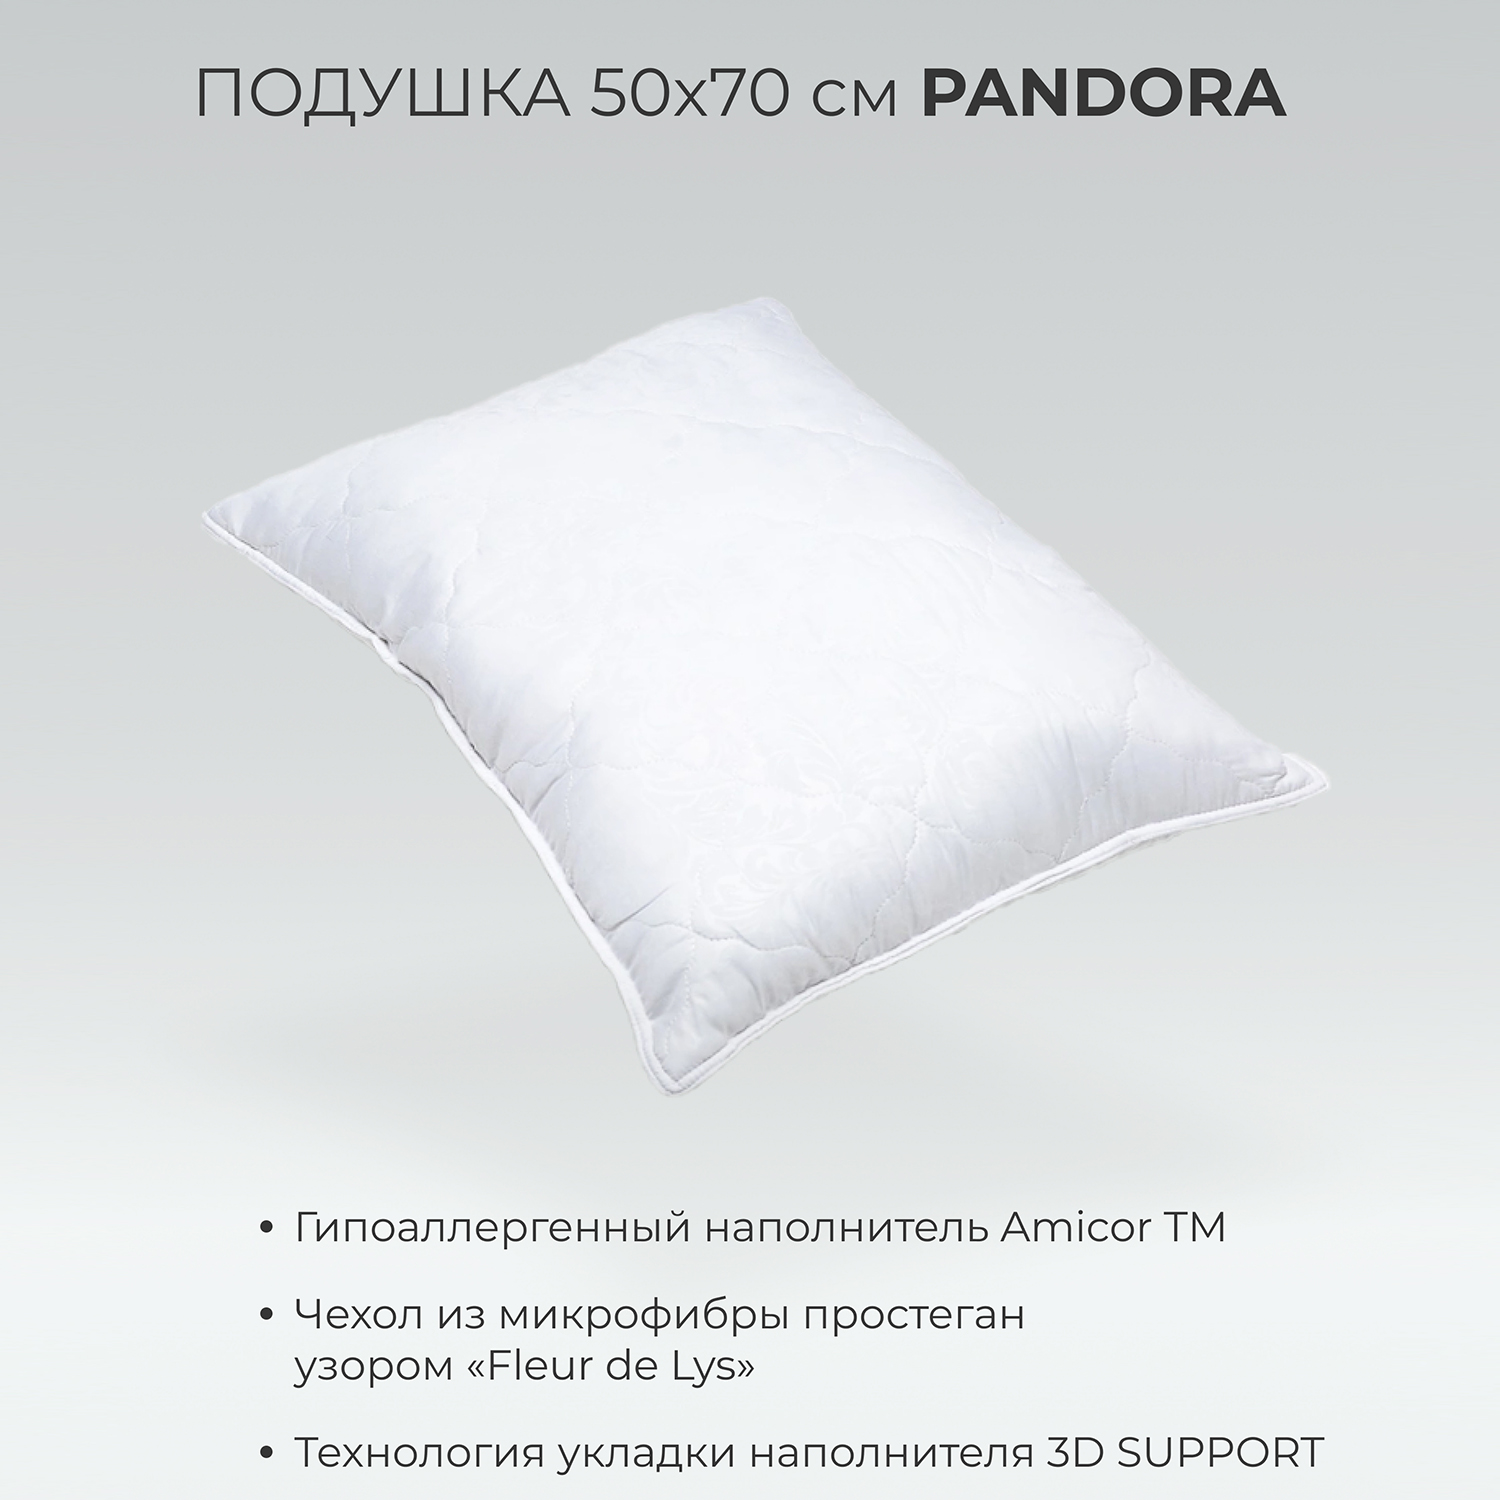 Подушка SONNO PANDORA 50х70 см гипоаллергенный наполнитель Amicor TM - фото 2